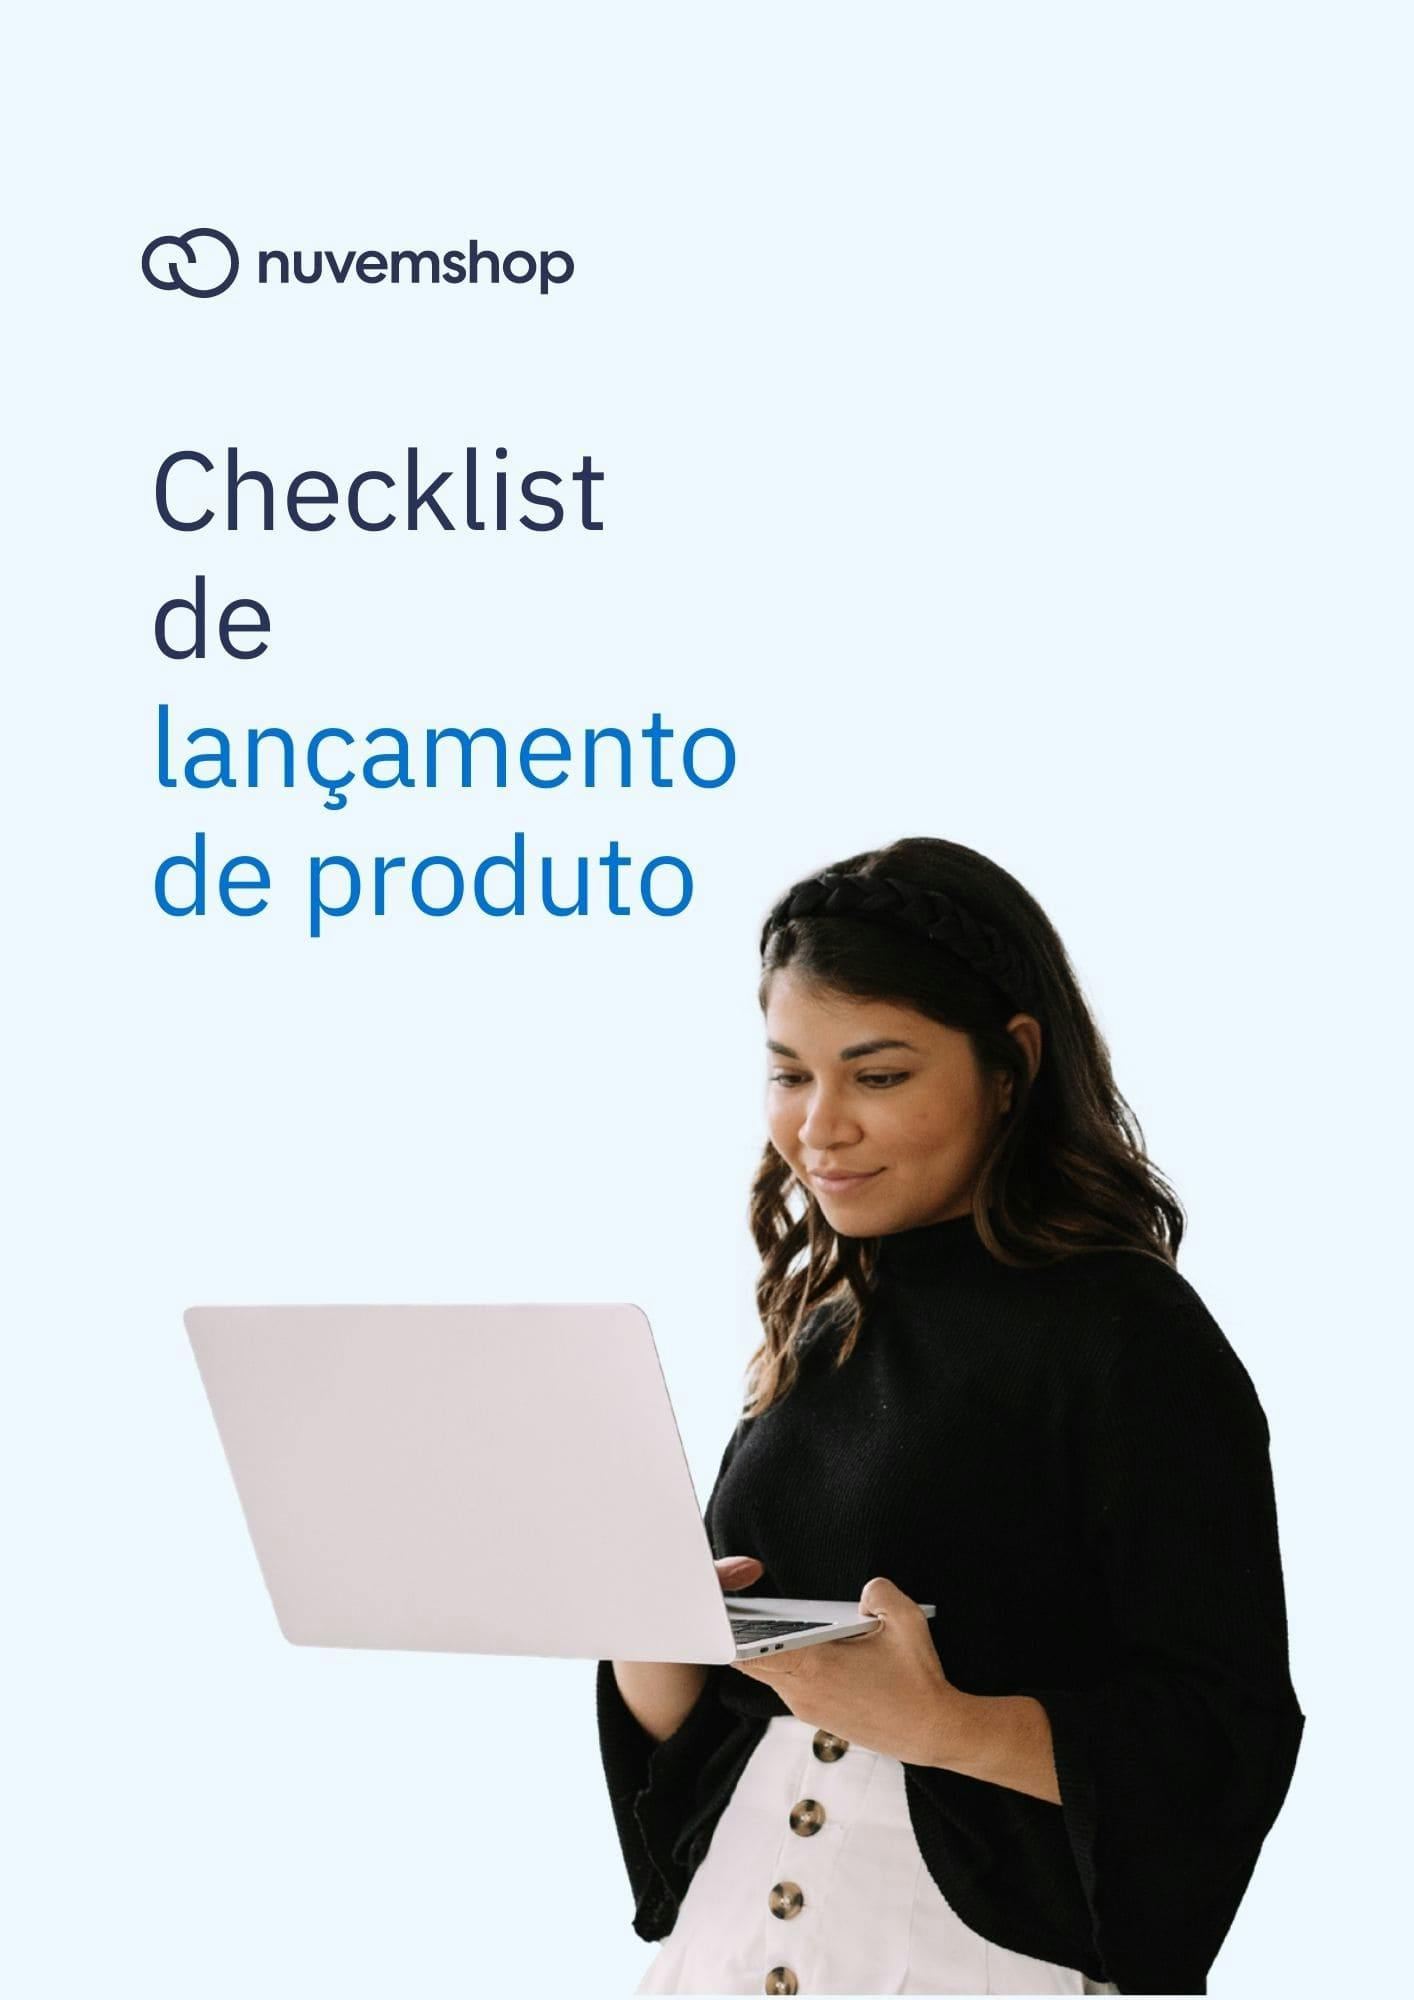 mulher com saia e roupa preta com notebook na mão vendo checklist de lançamento de produtos